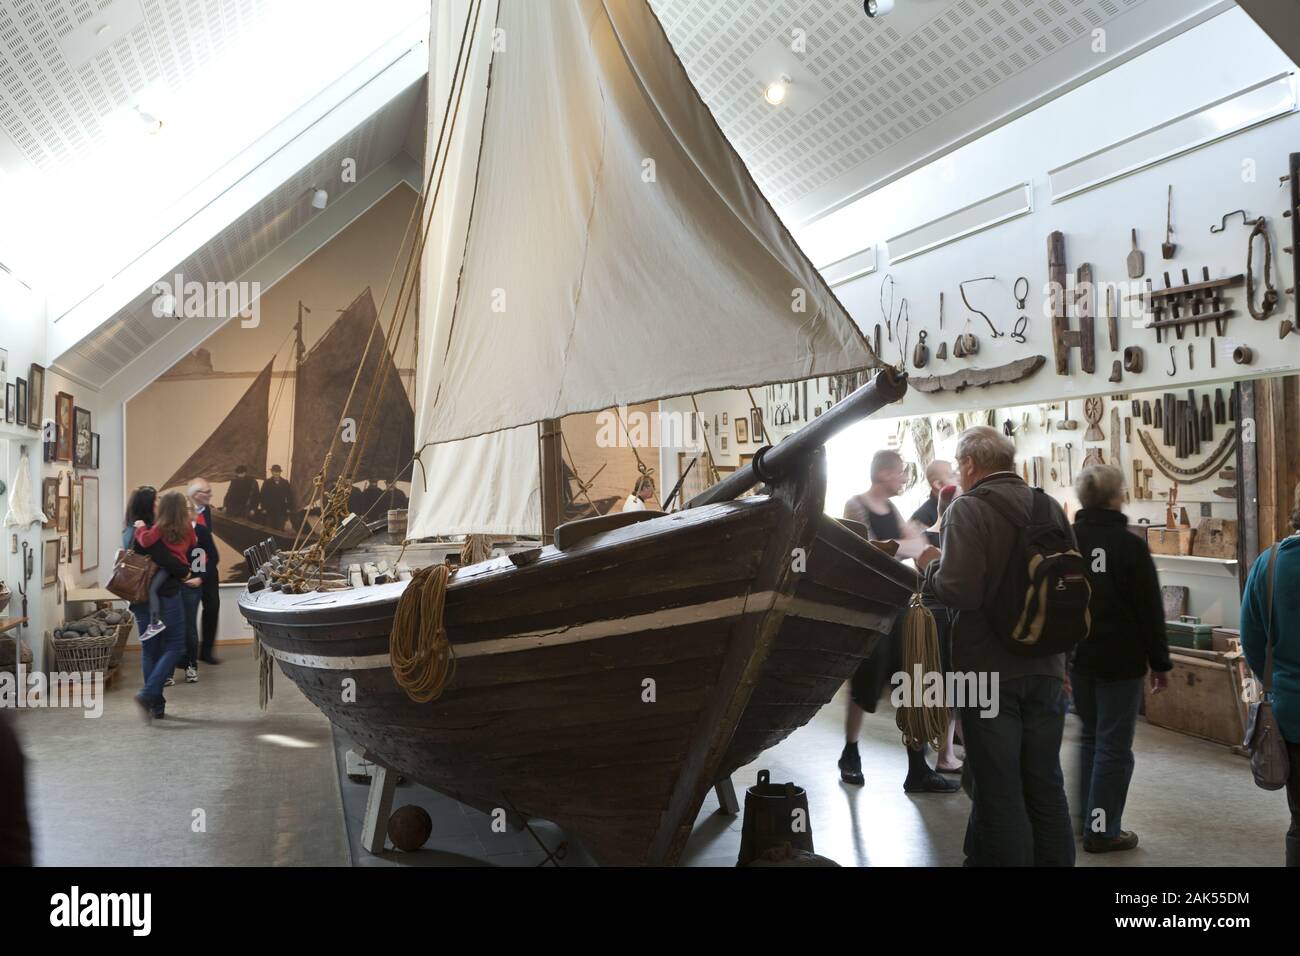 Skogar: typisches Fischerboot im Heimatmuseum, Island | usage worldwide Stock Photo